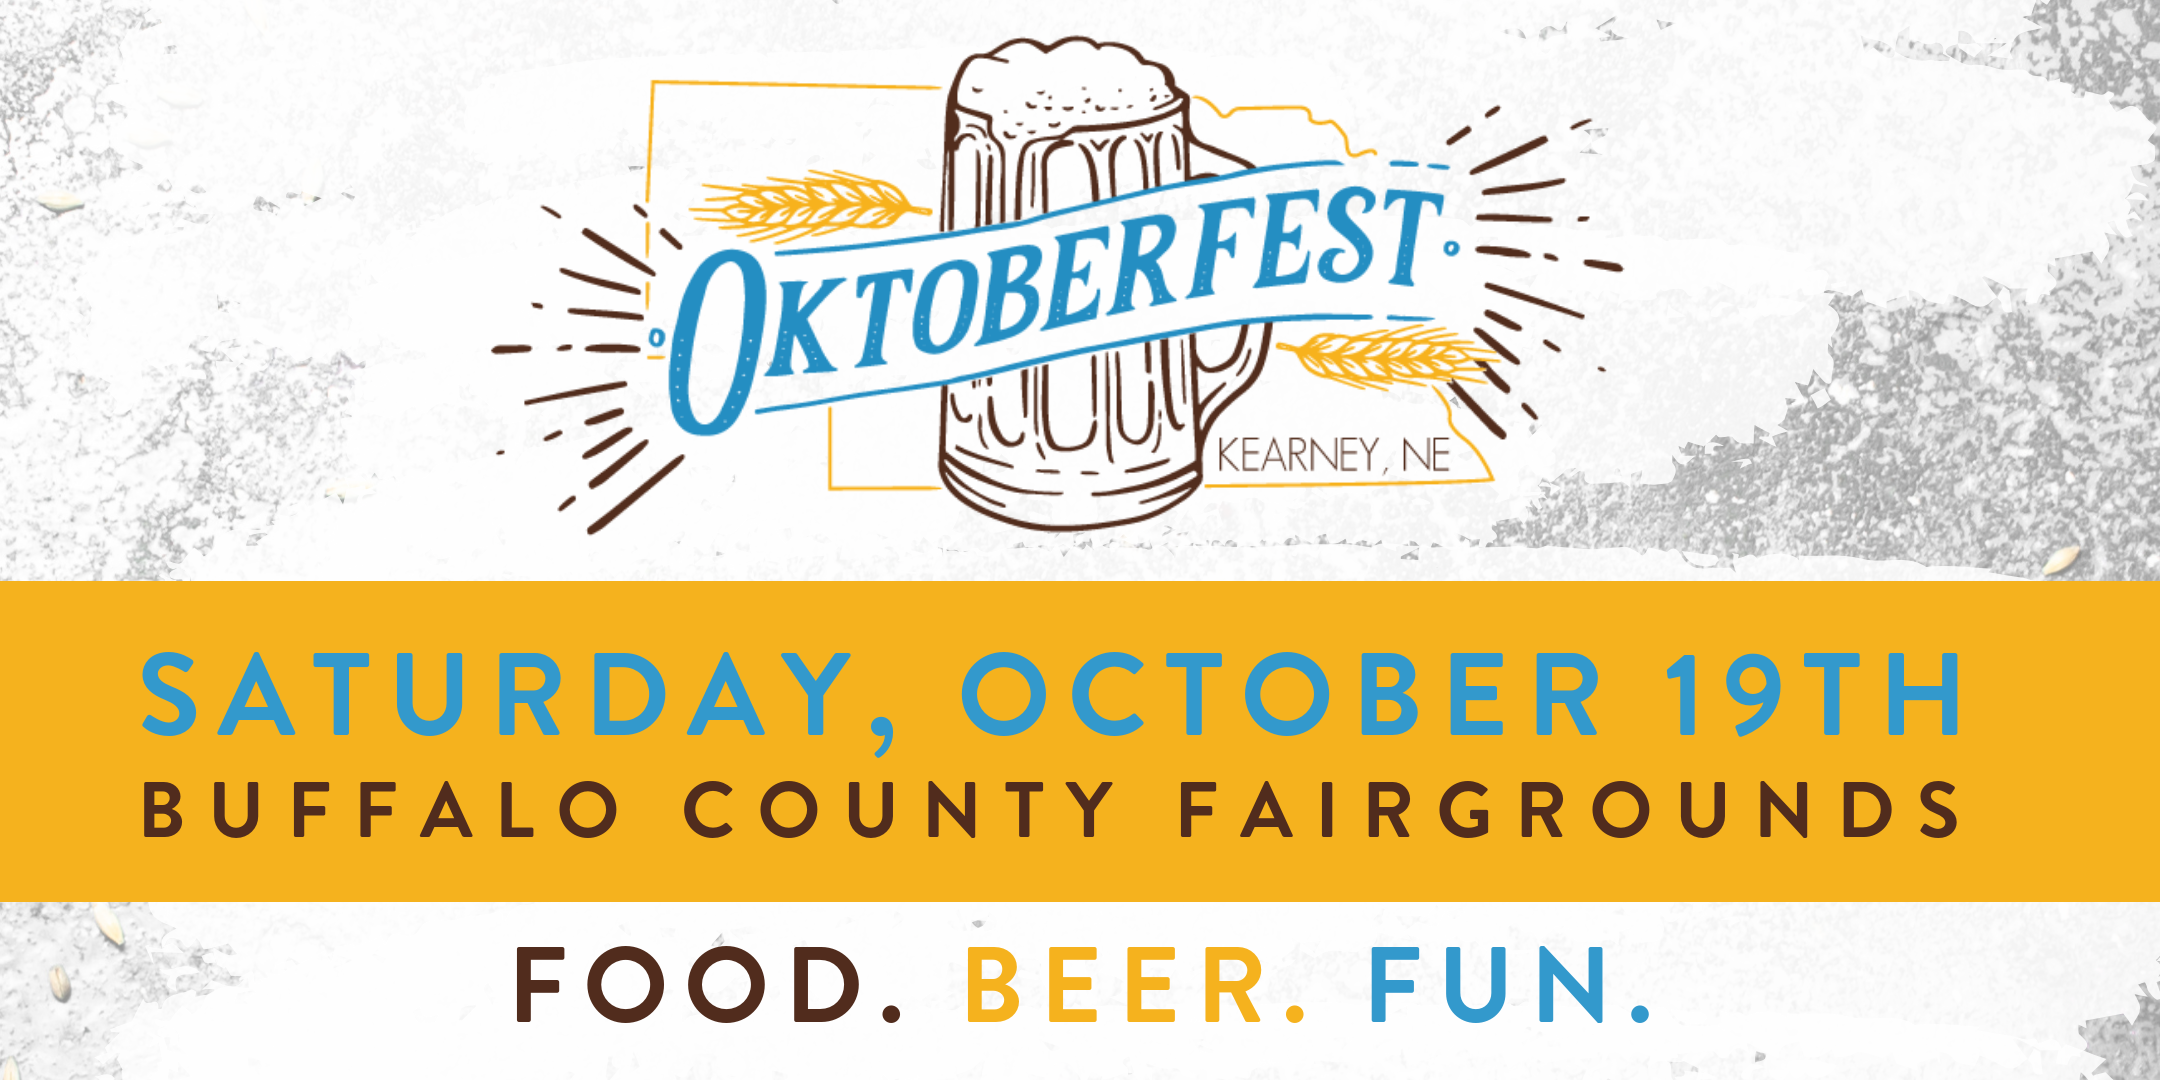 Kearney Oktoberfest banner image